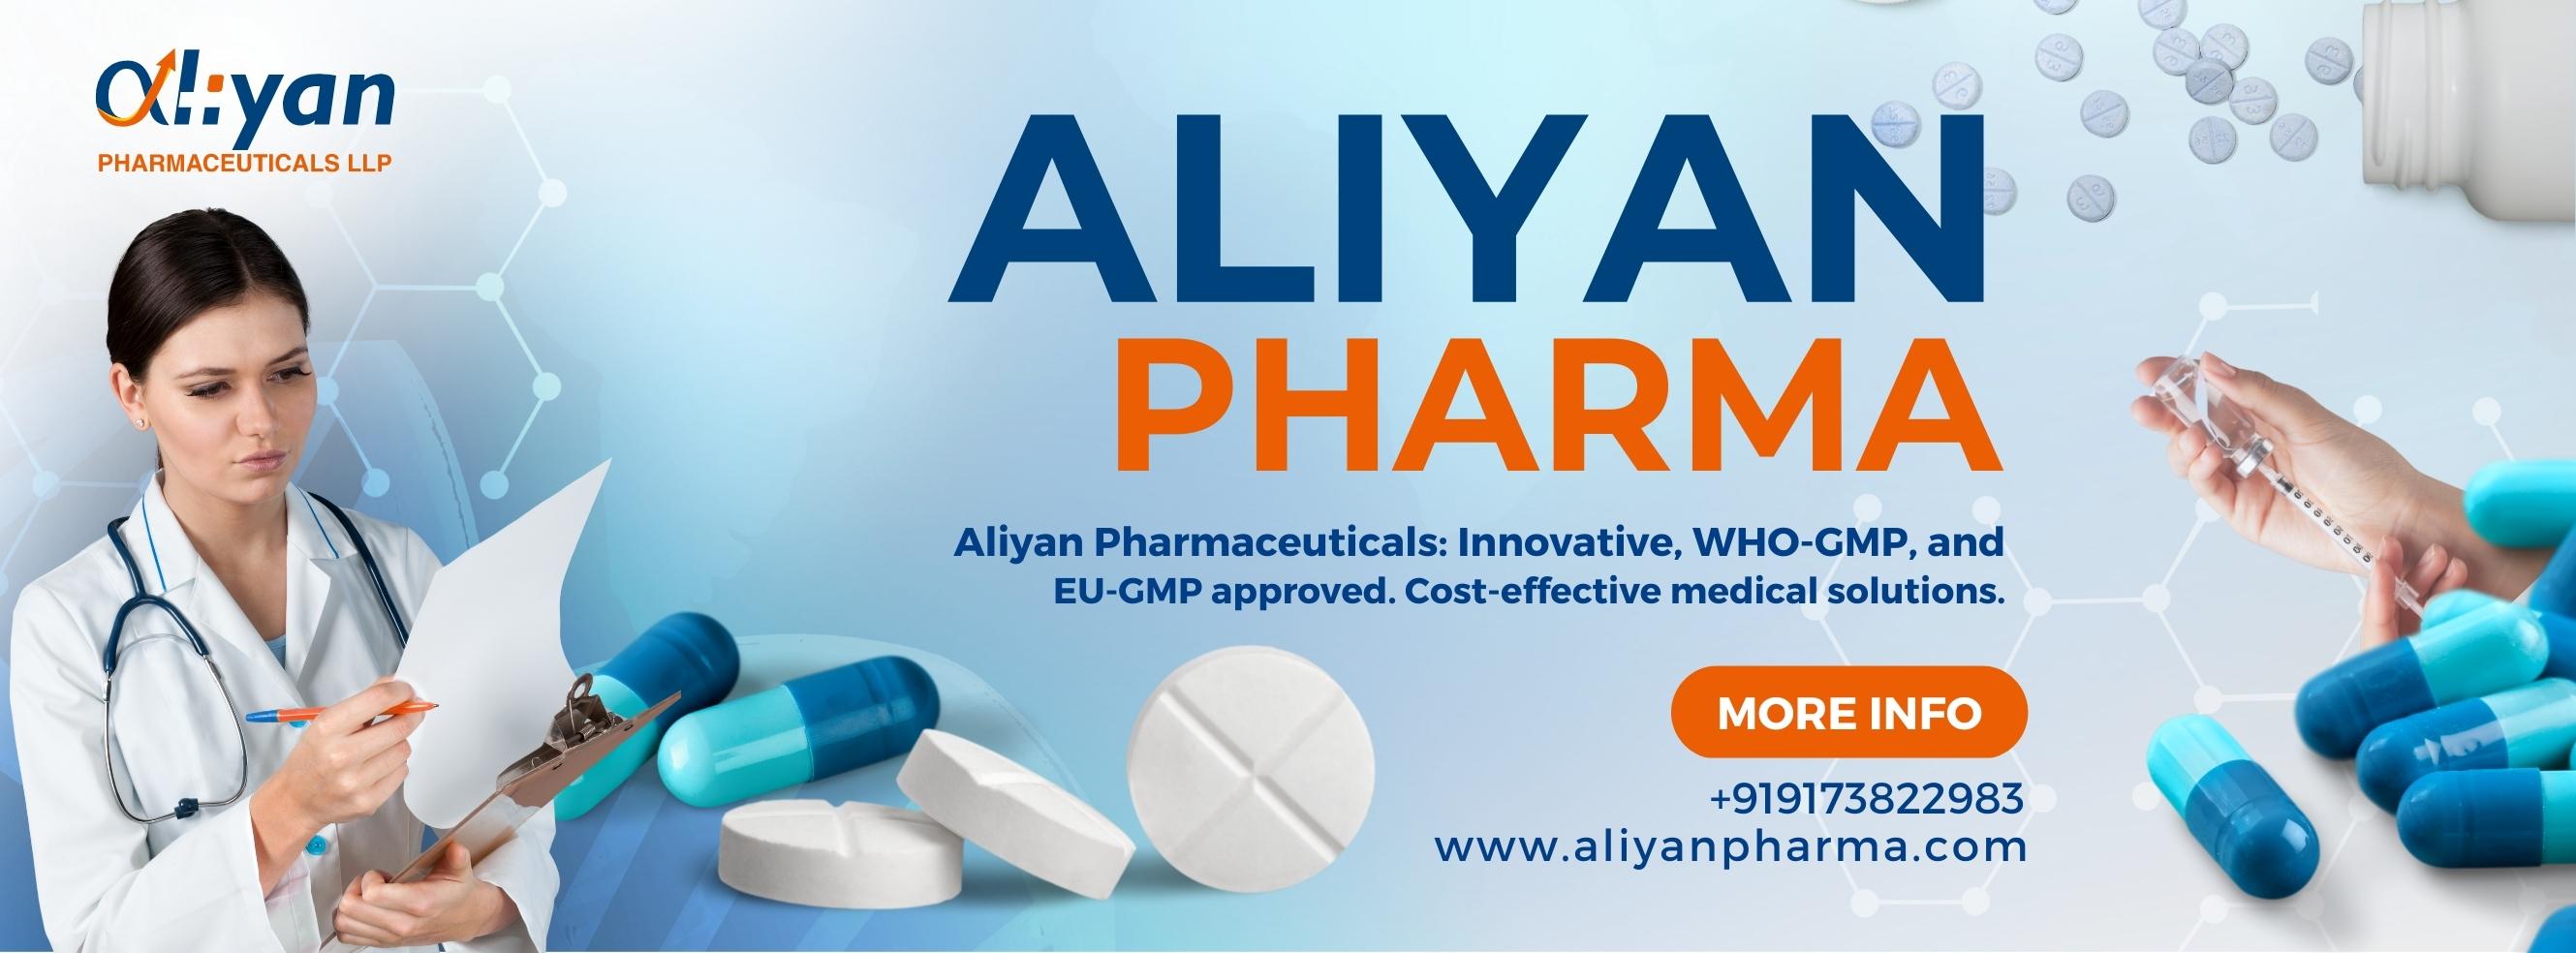 Aliyan Pharma Cover Image